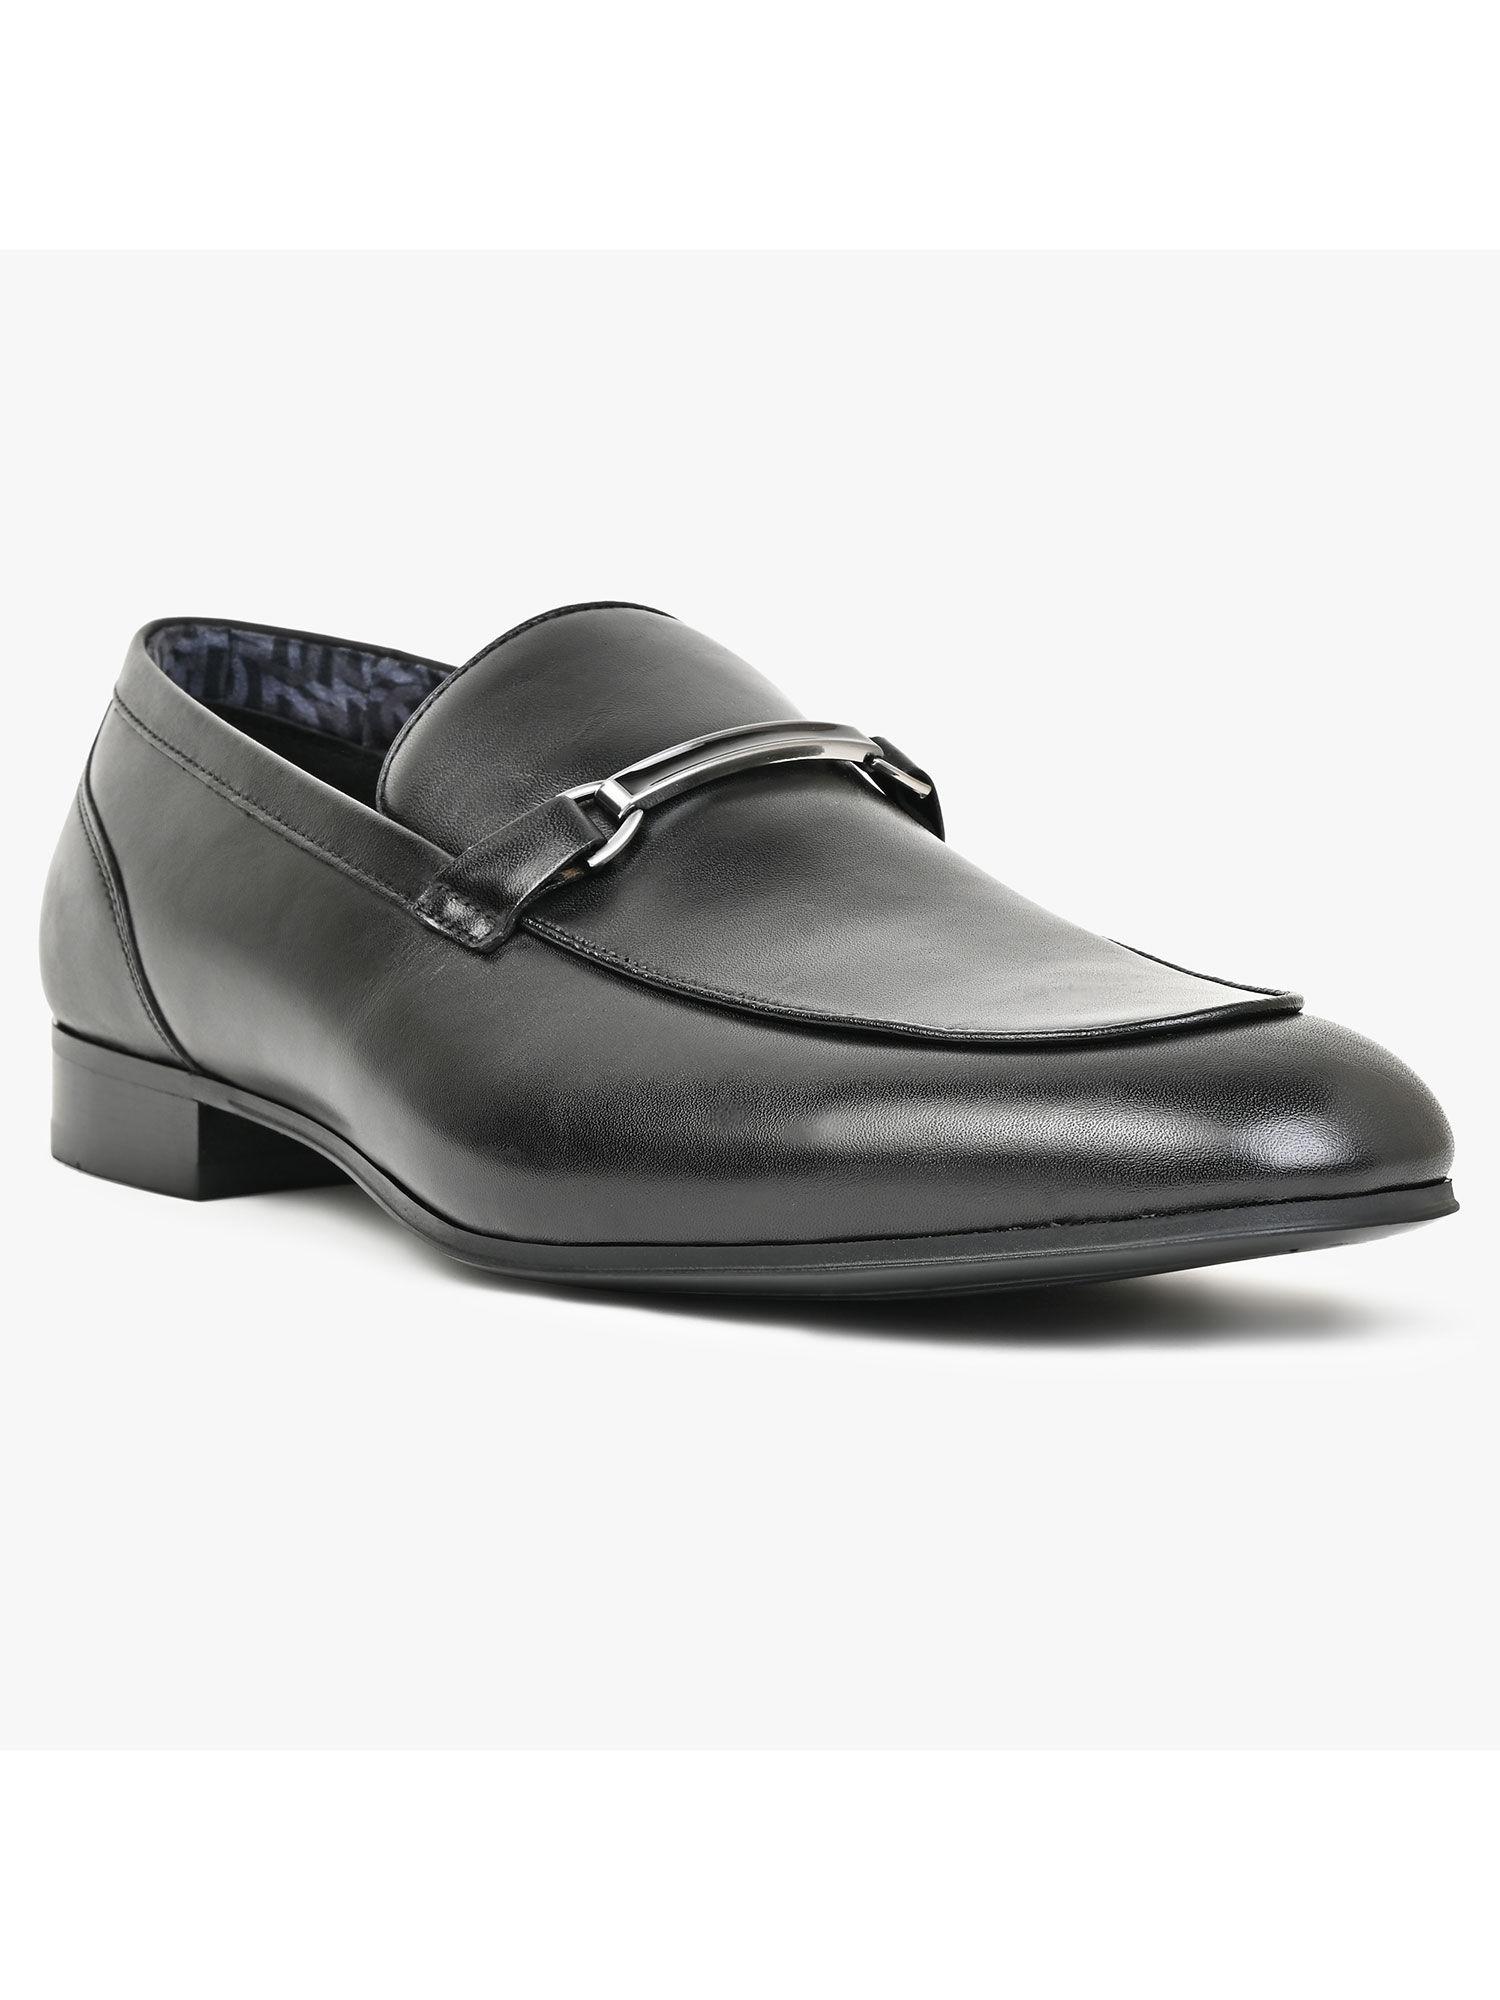 men-formal-loafers-black